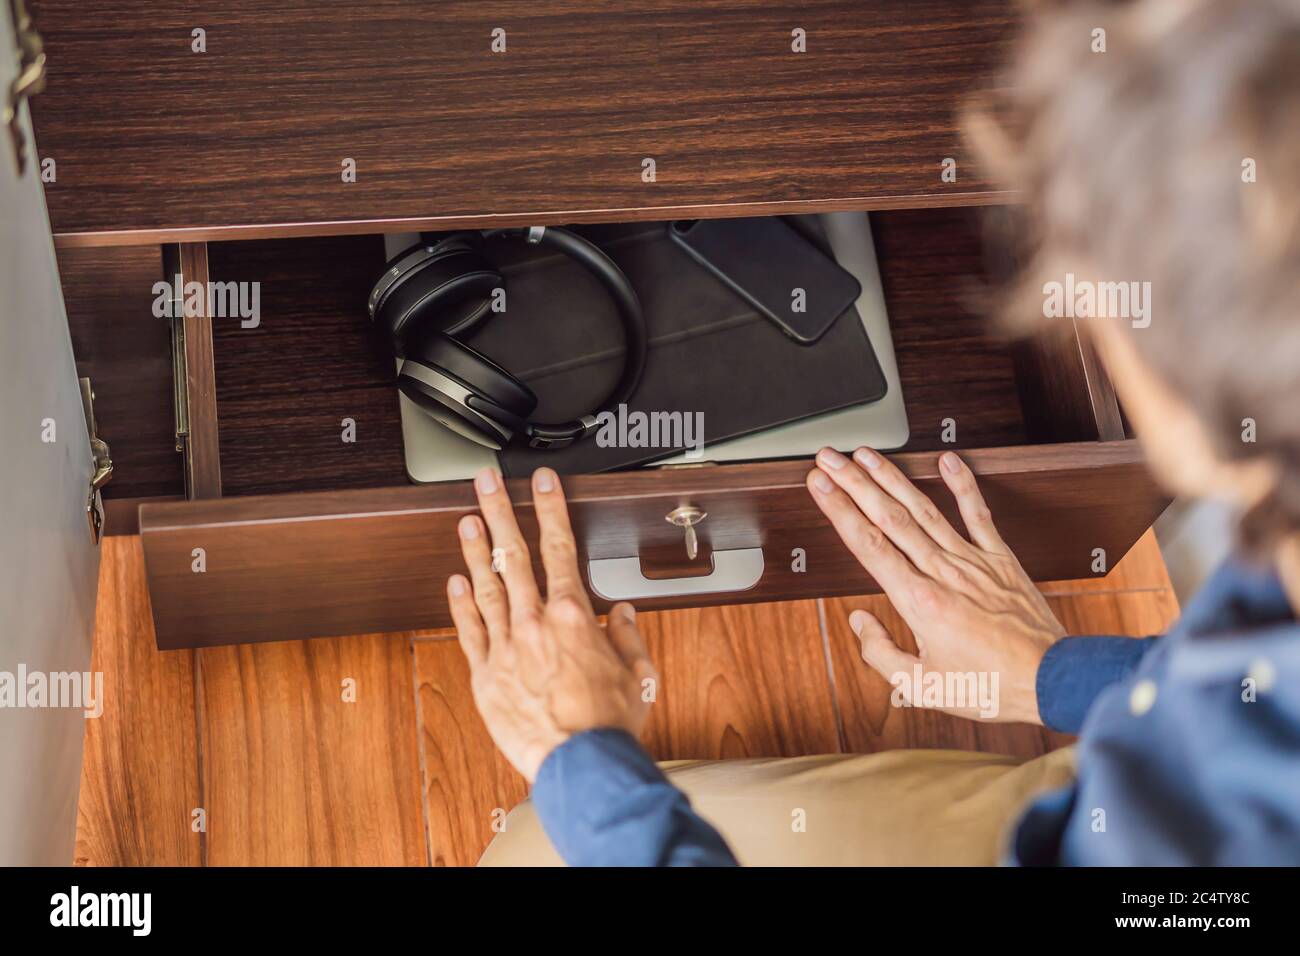 Un uomo mette i gadget in un armadietto per la disintossicazione digitale Foto Stock